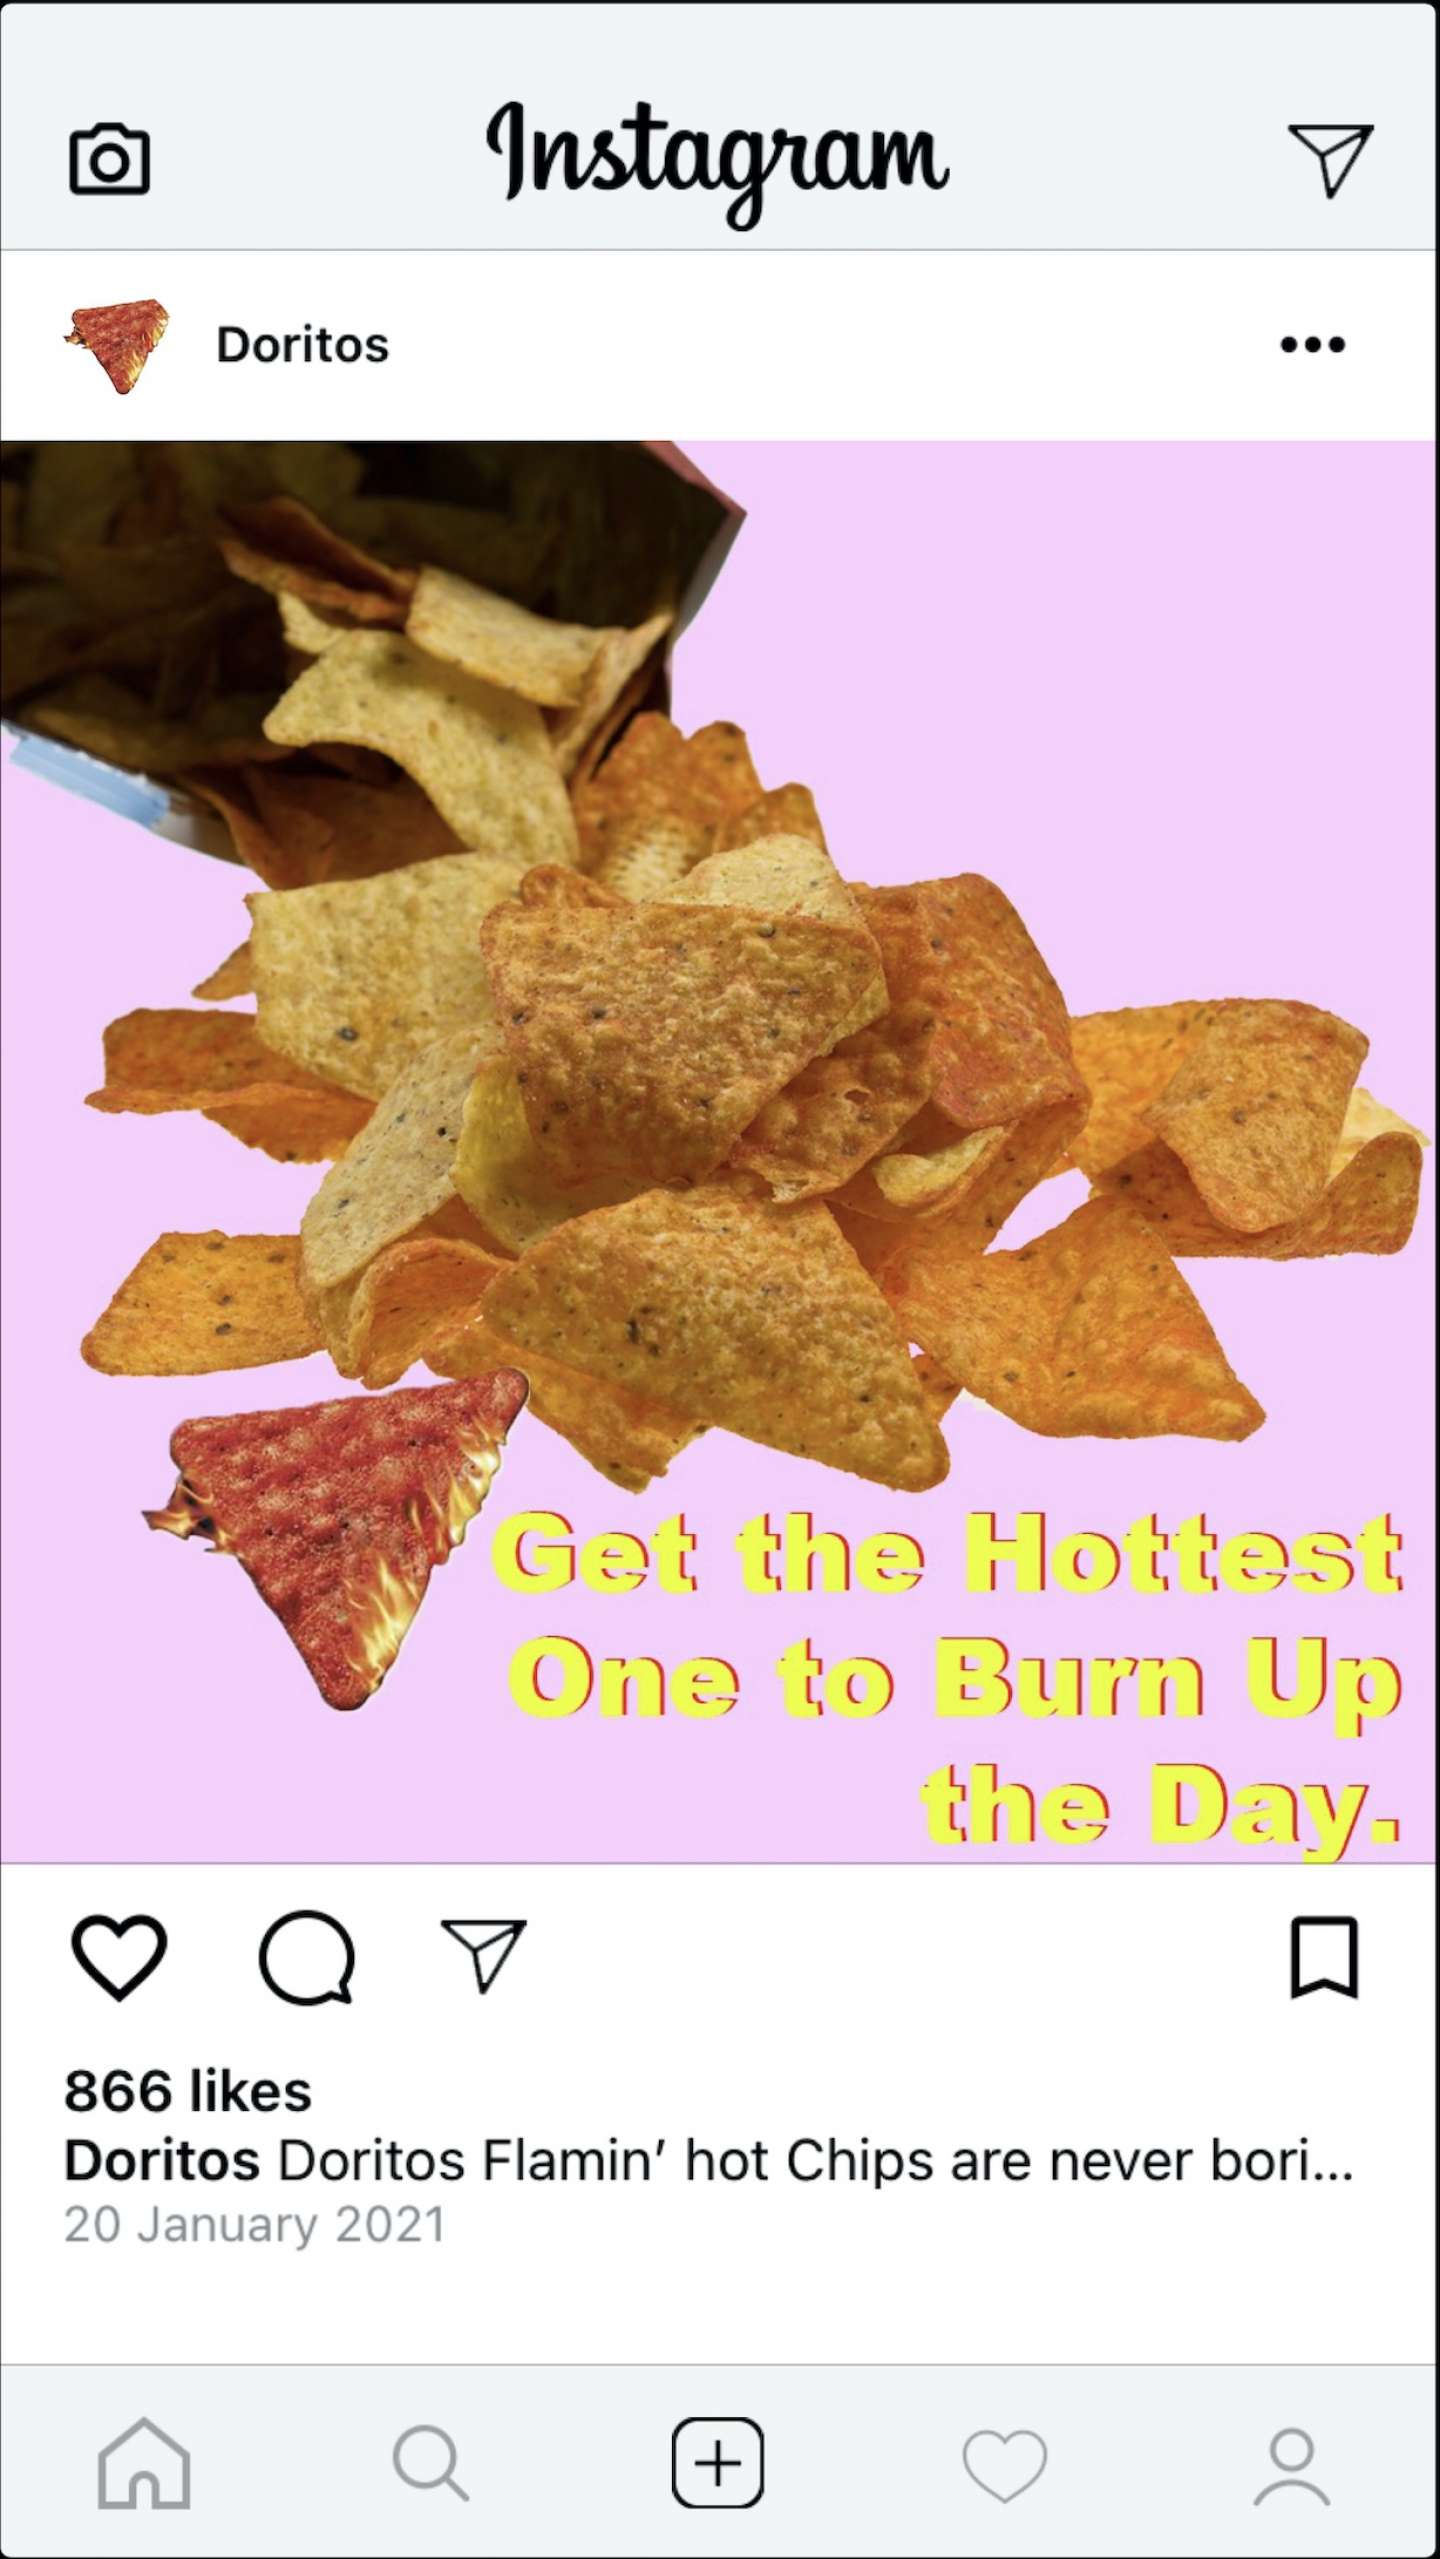 Doritos Flamin' Hot Chips